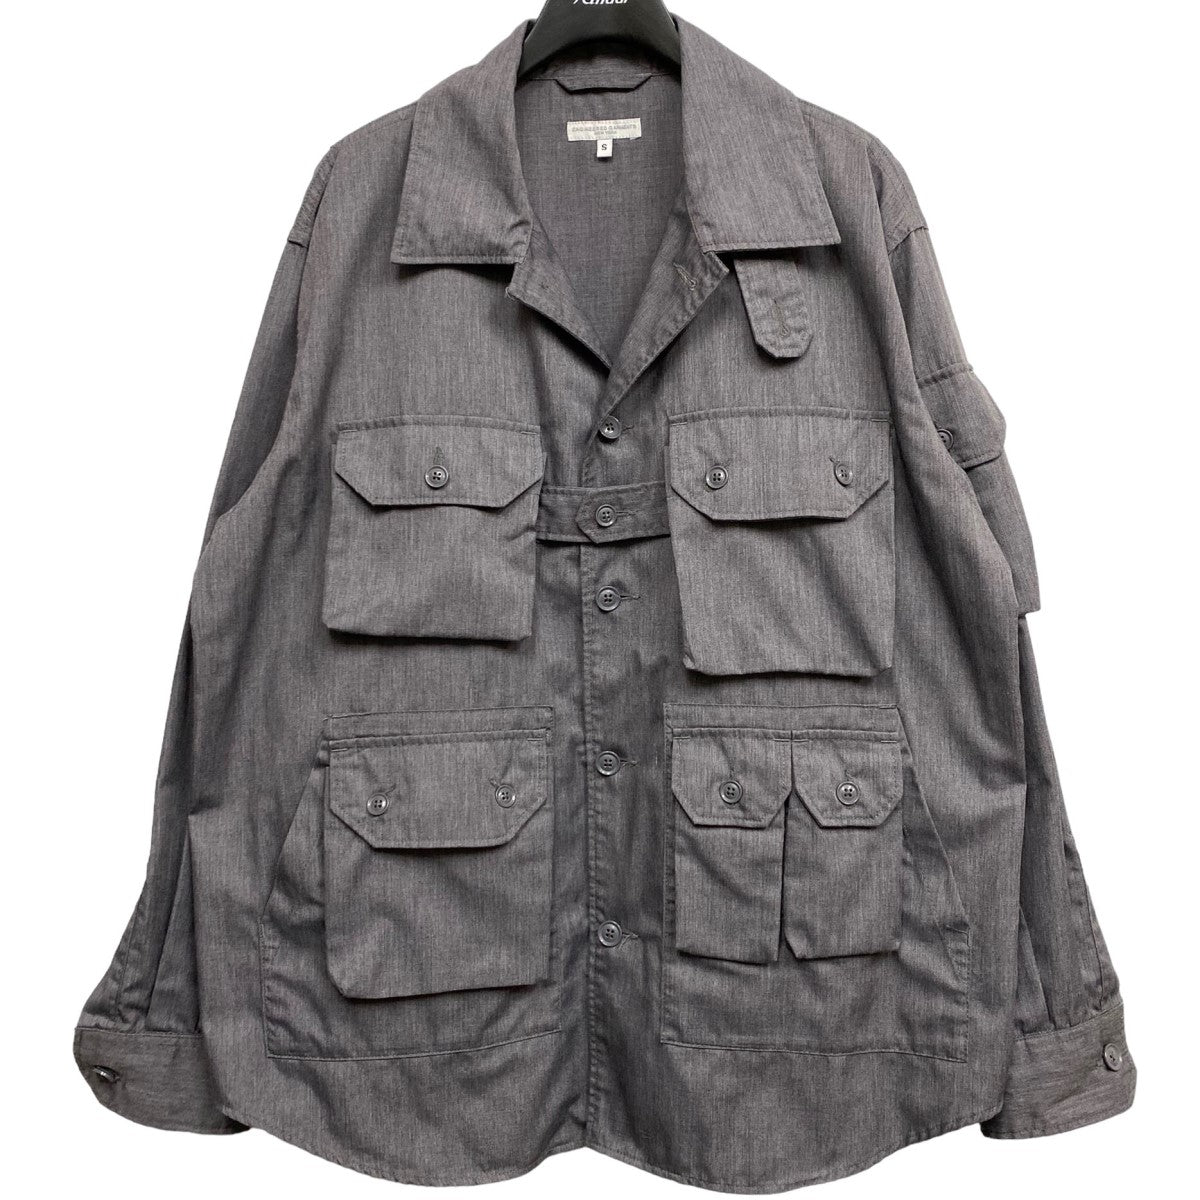 9,200円ガーメンツ　Explore Shirt Jacket Nylon Ripstop